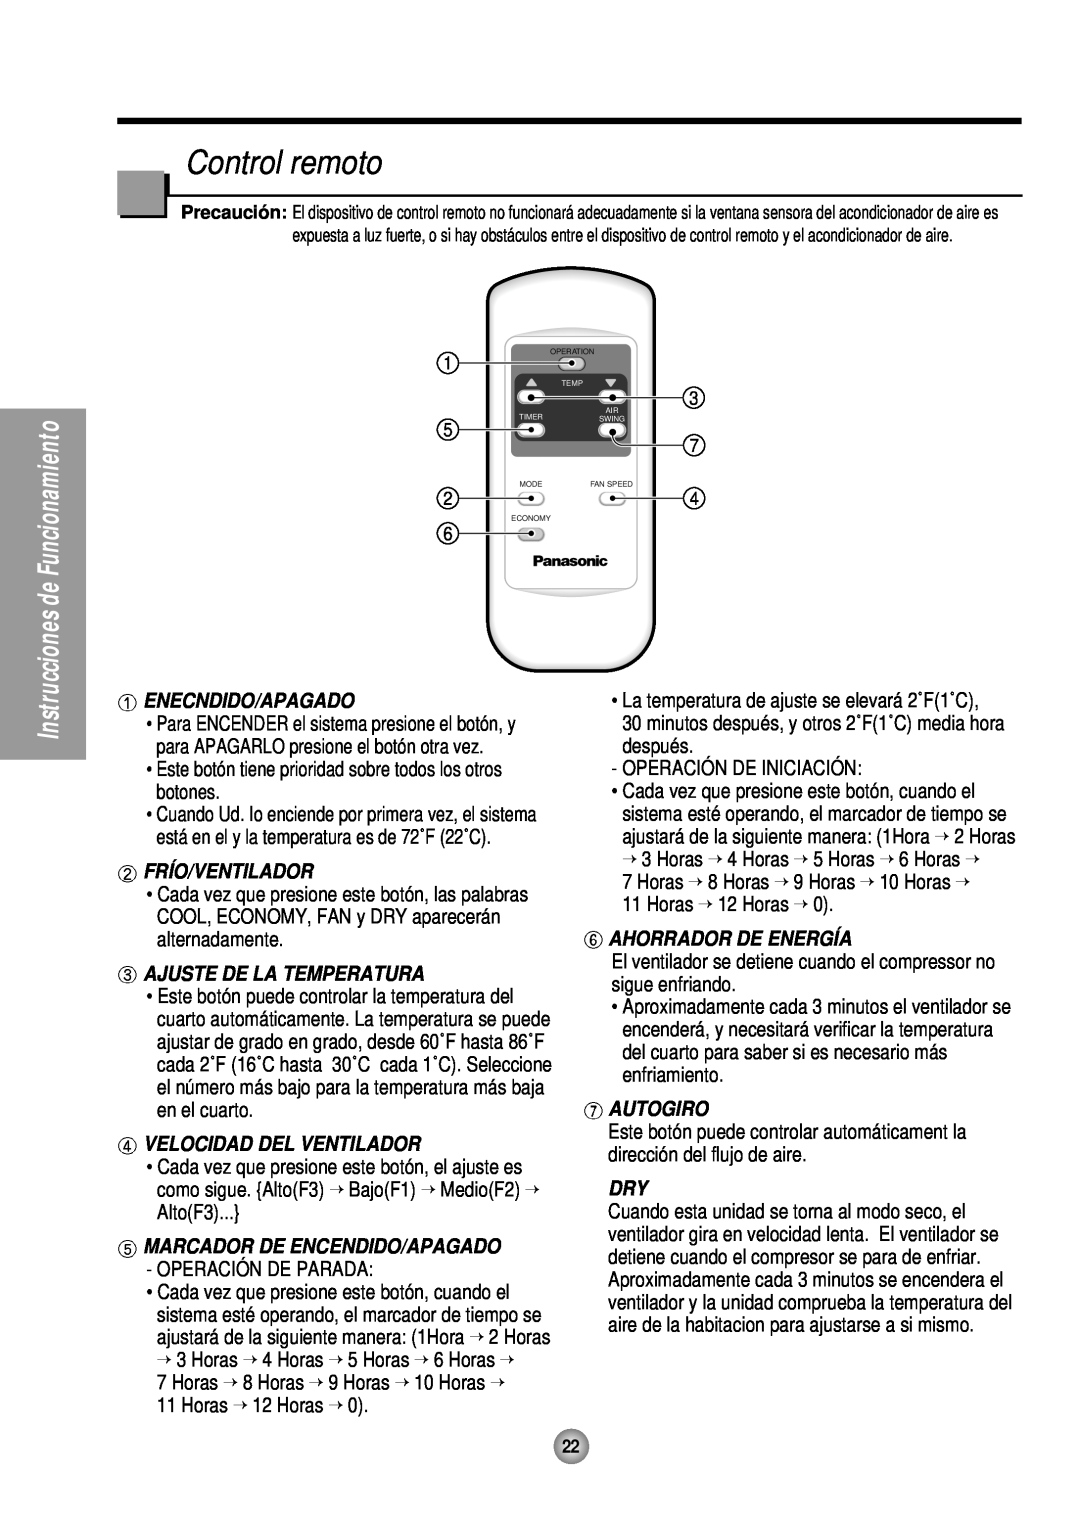 Panasonic CW-XC185HU Control remoto, Enecndido/Apagado, Frío/Ventilador, Ajuste De La Temperatura, Ahorrador De Energía 